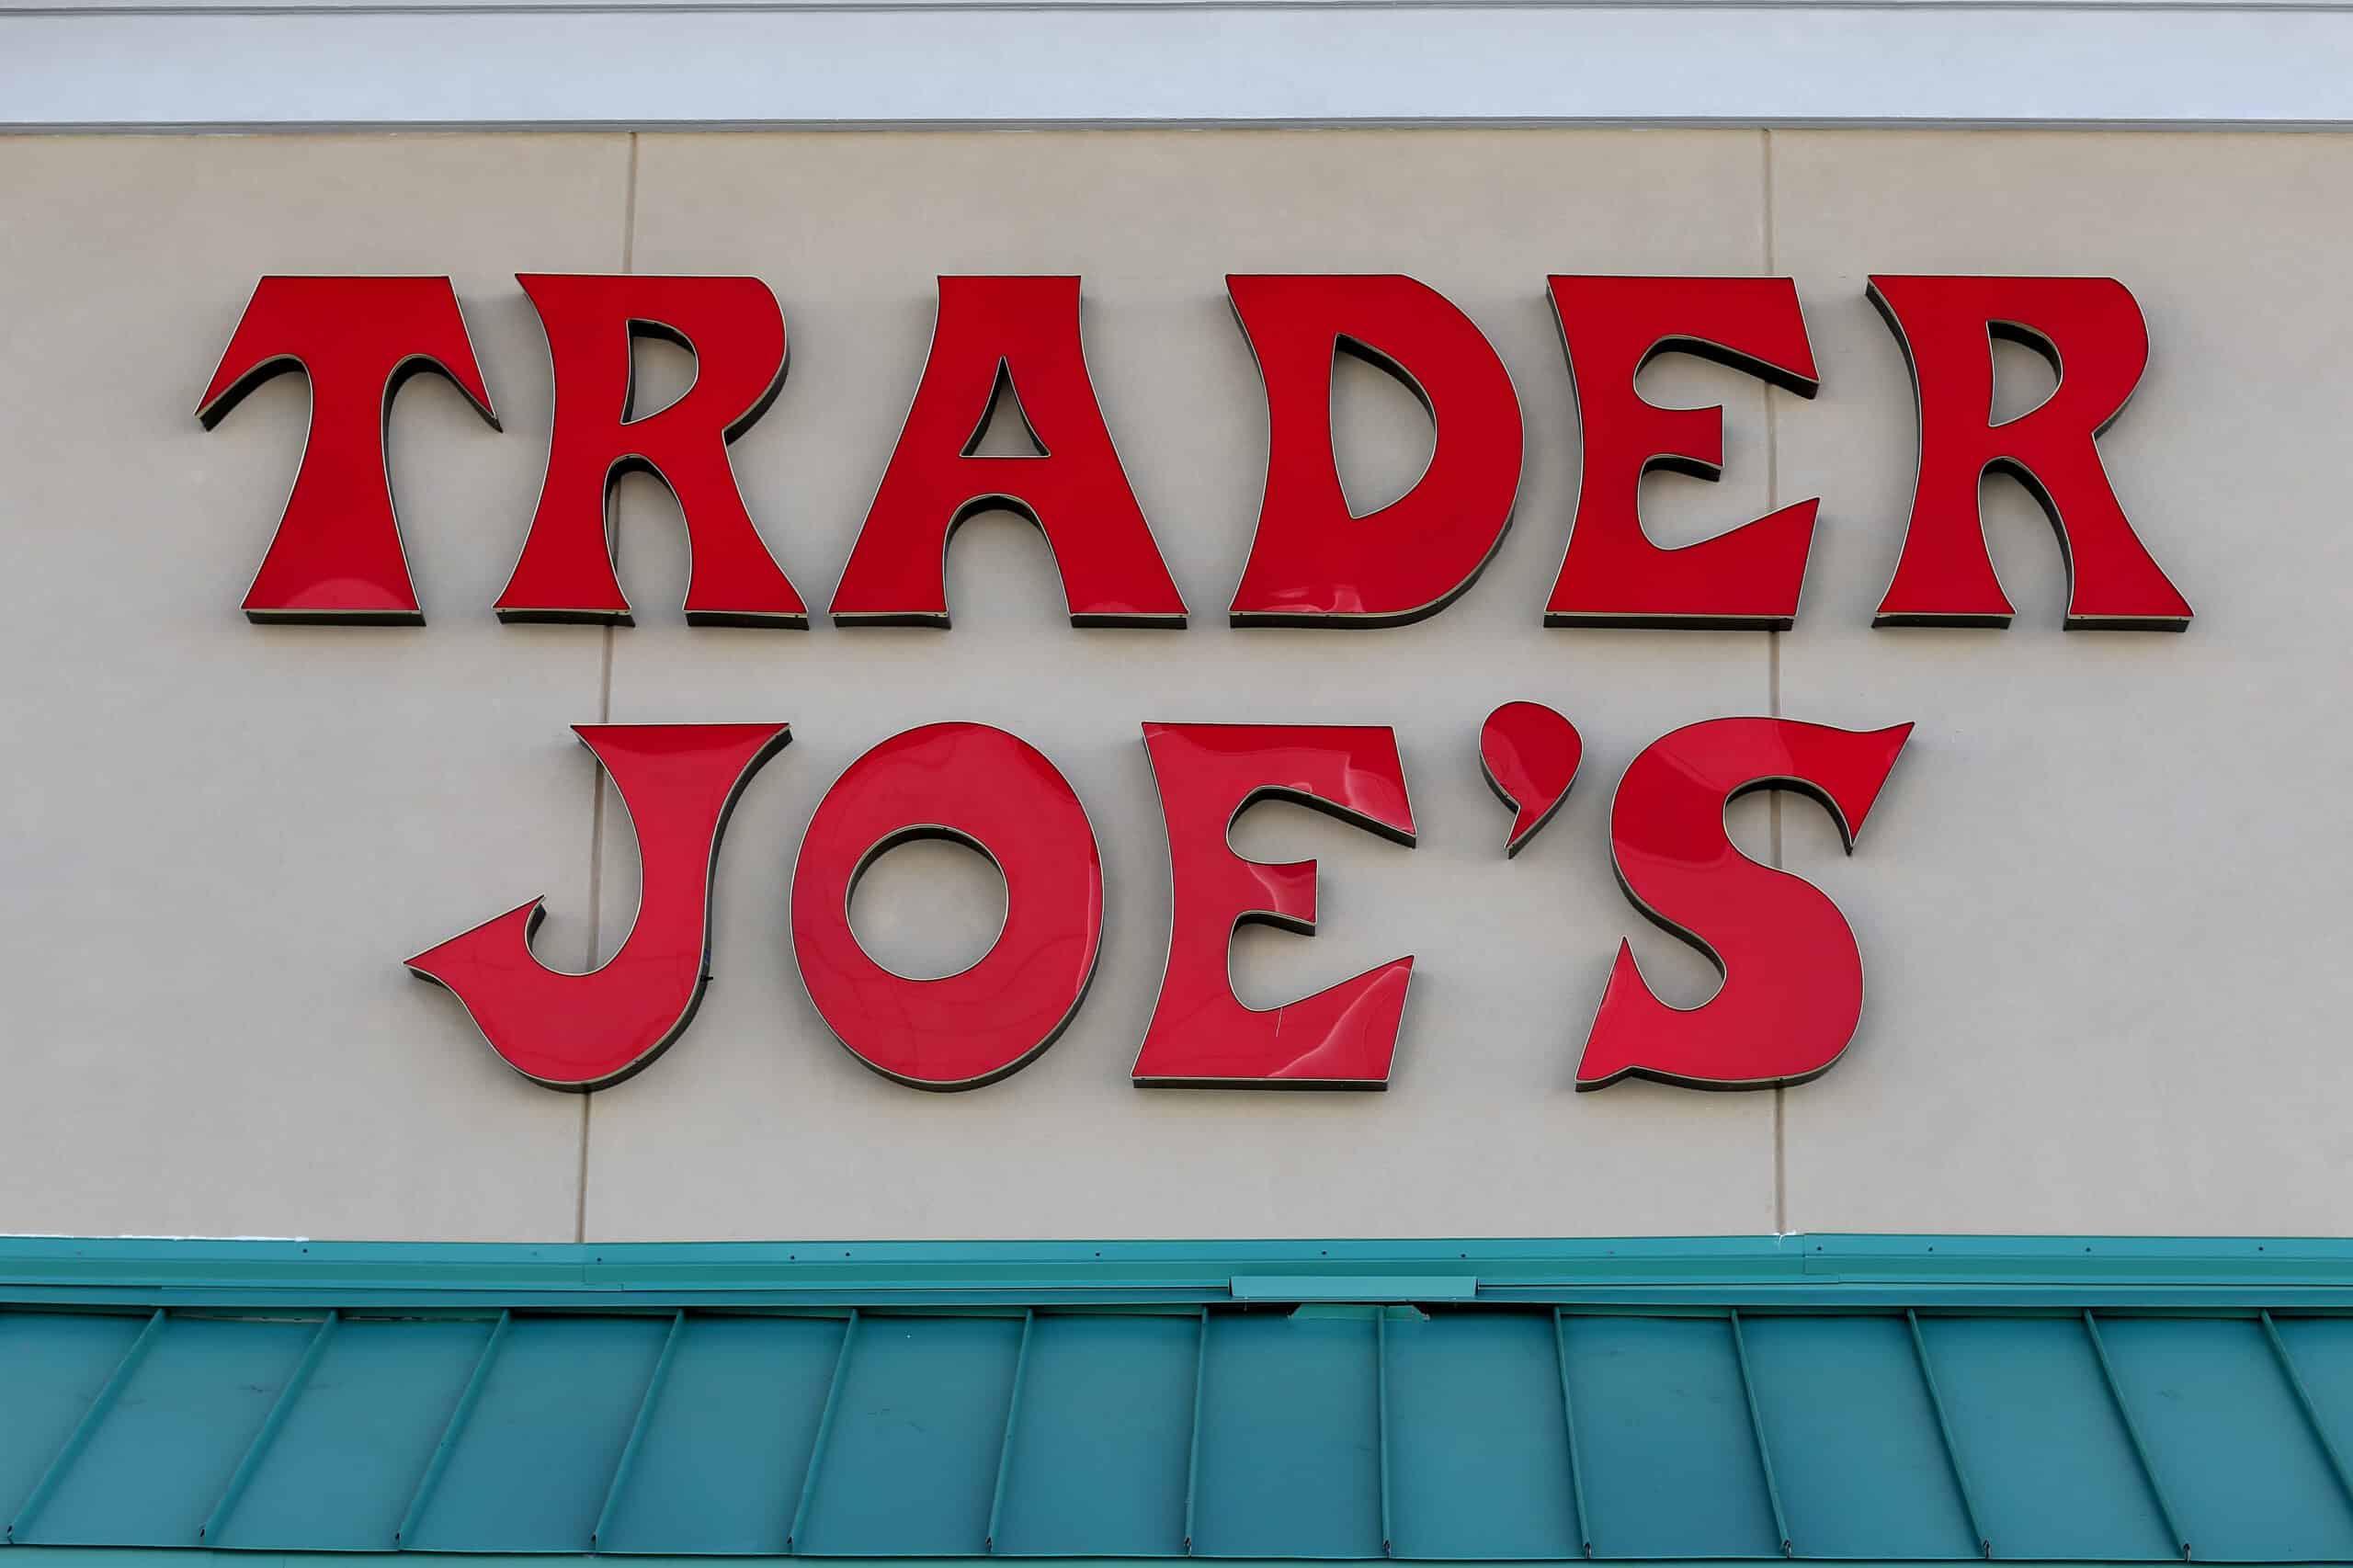 Trader Joe's sign